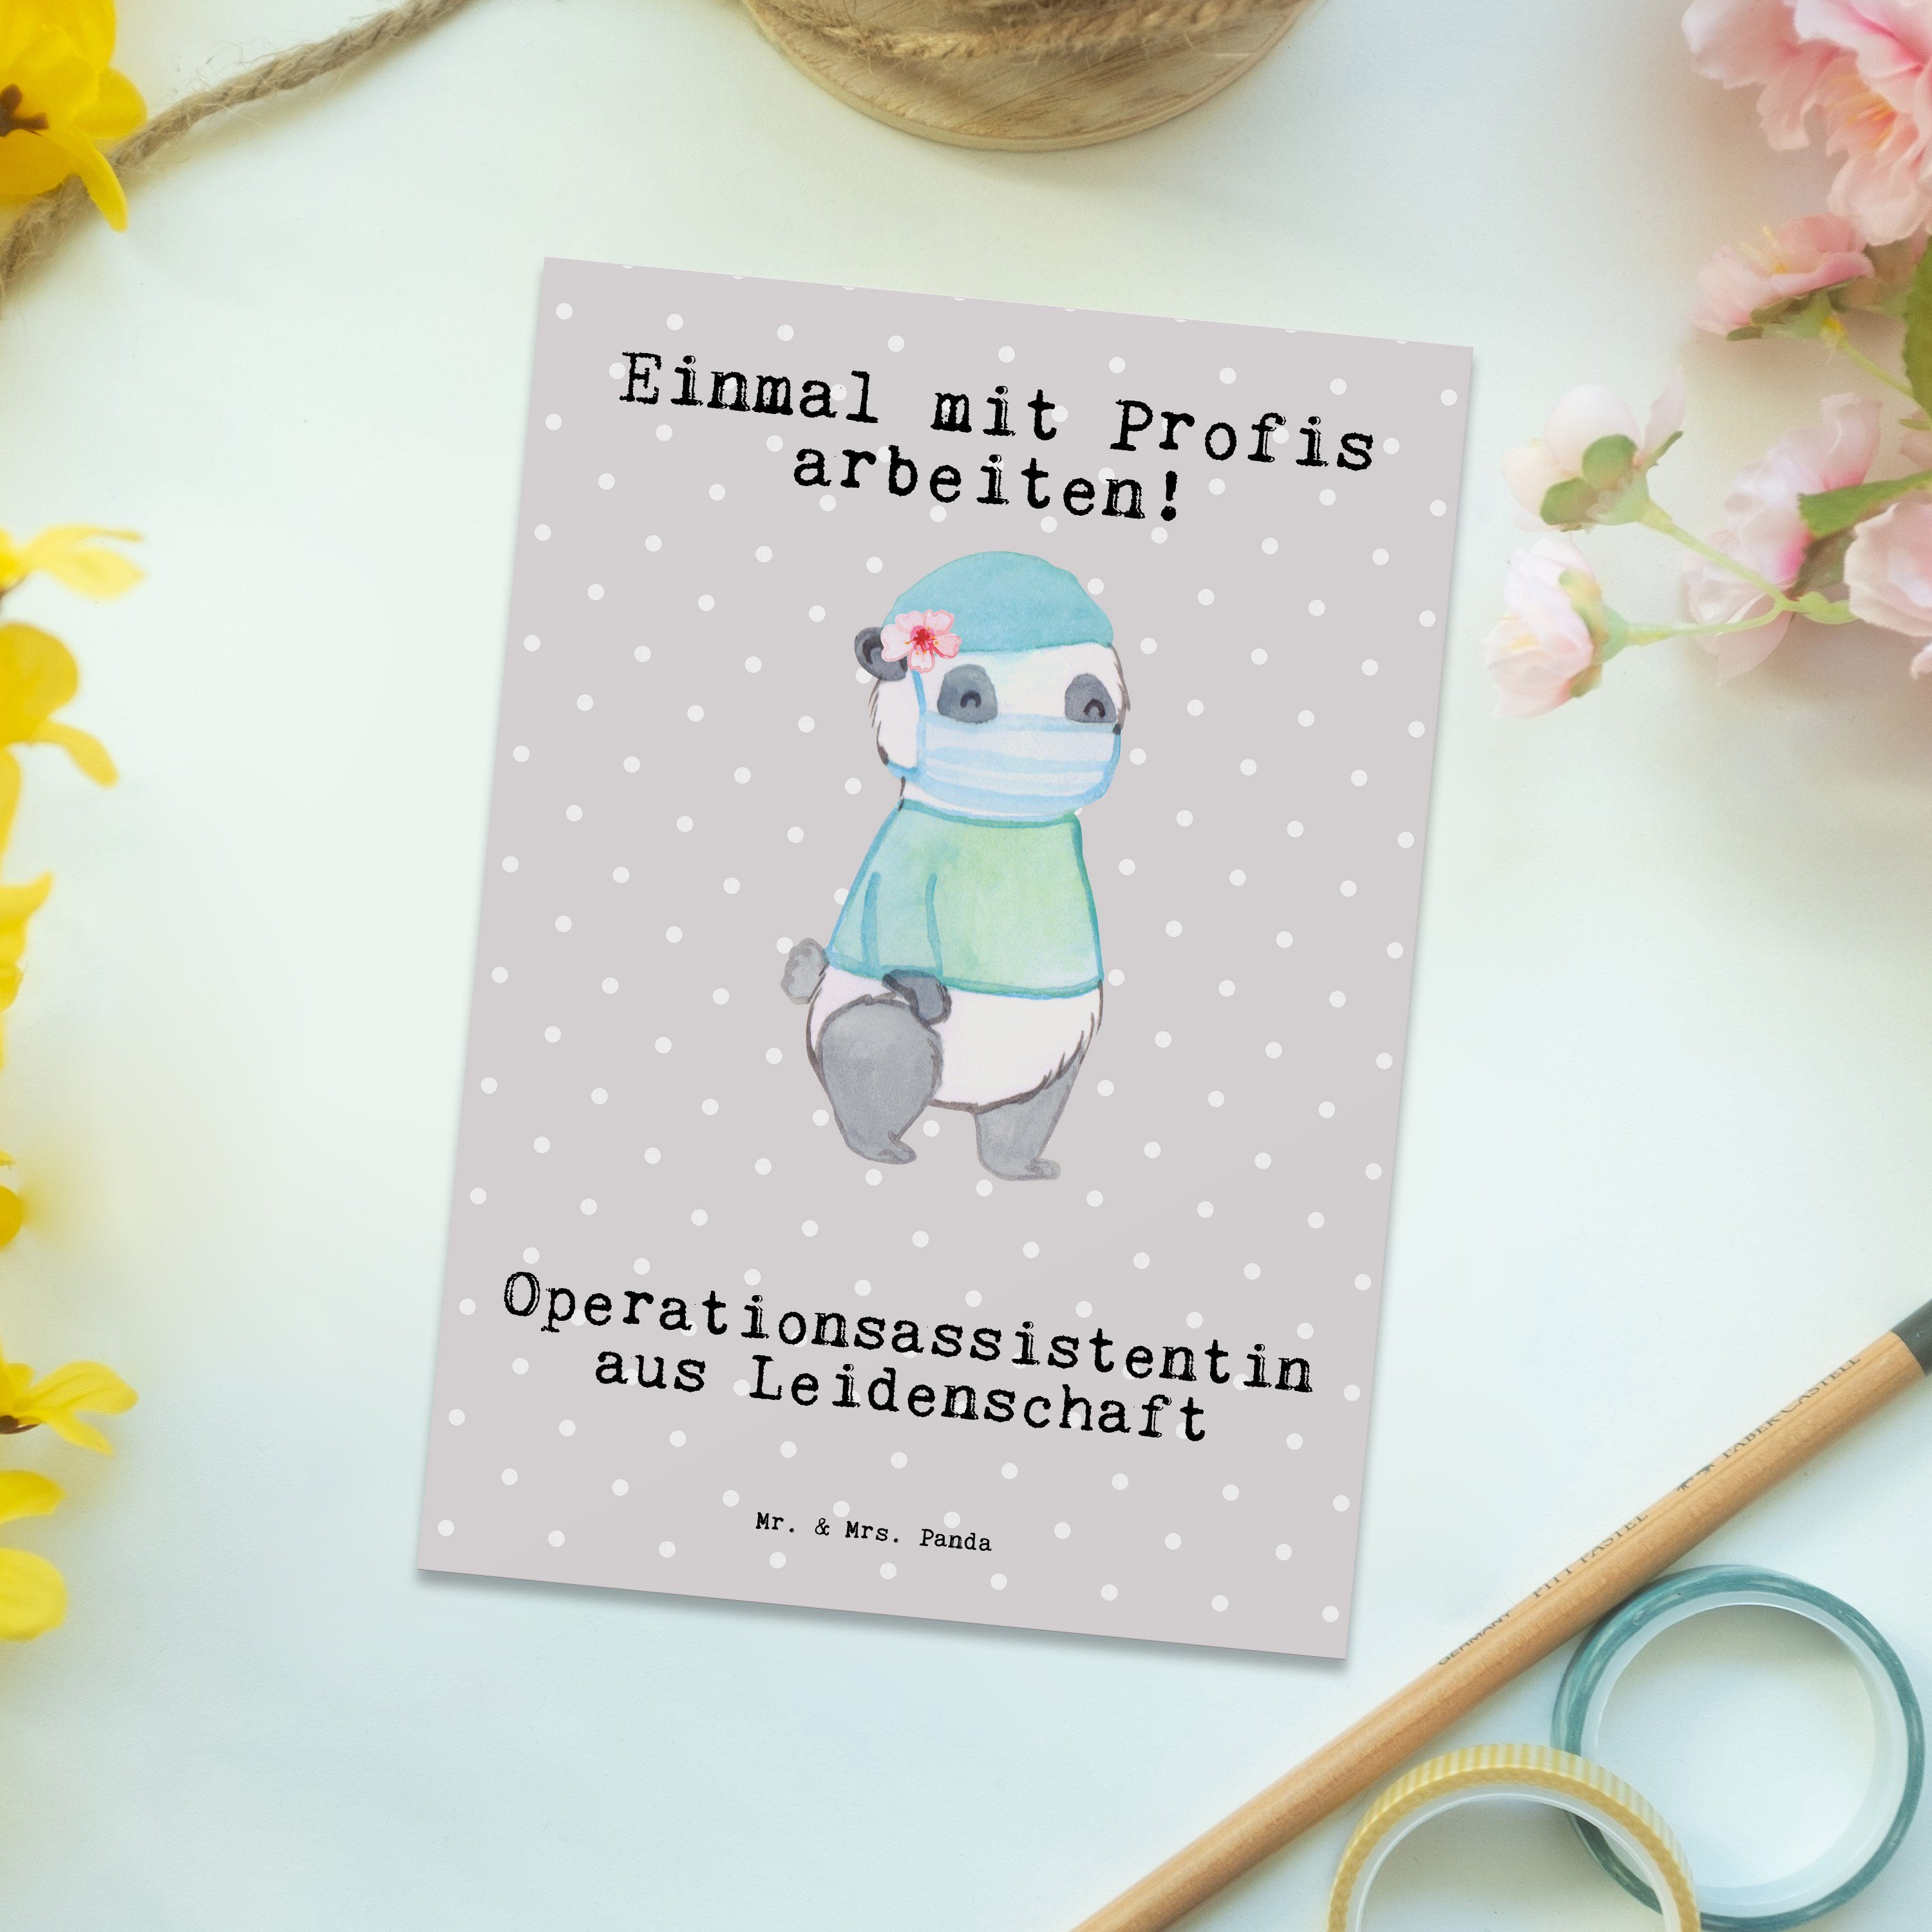 Mr. & Grau - Leidenschaft aus Panda Postkarte Fir Geschenk, Operationsassistentin Pastell - Mrs